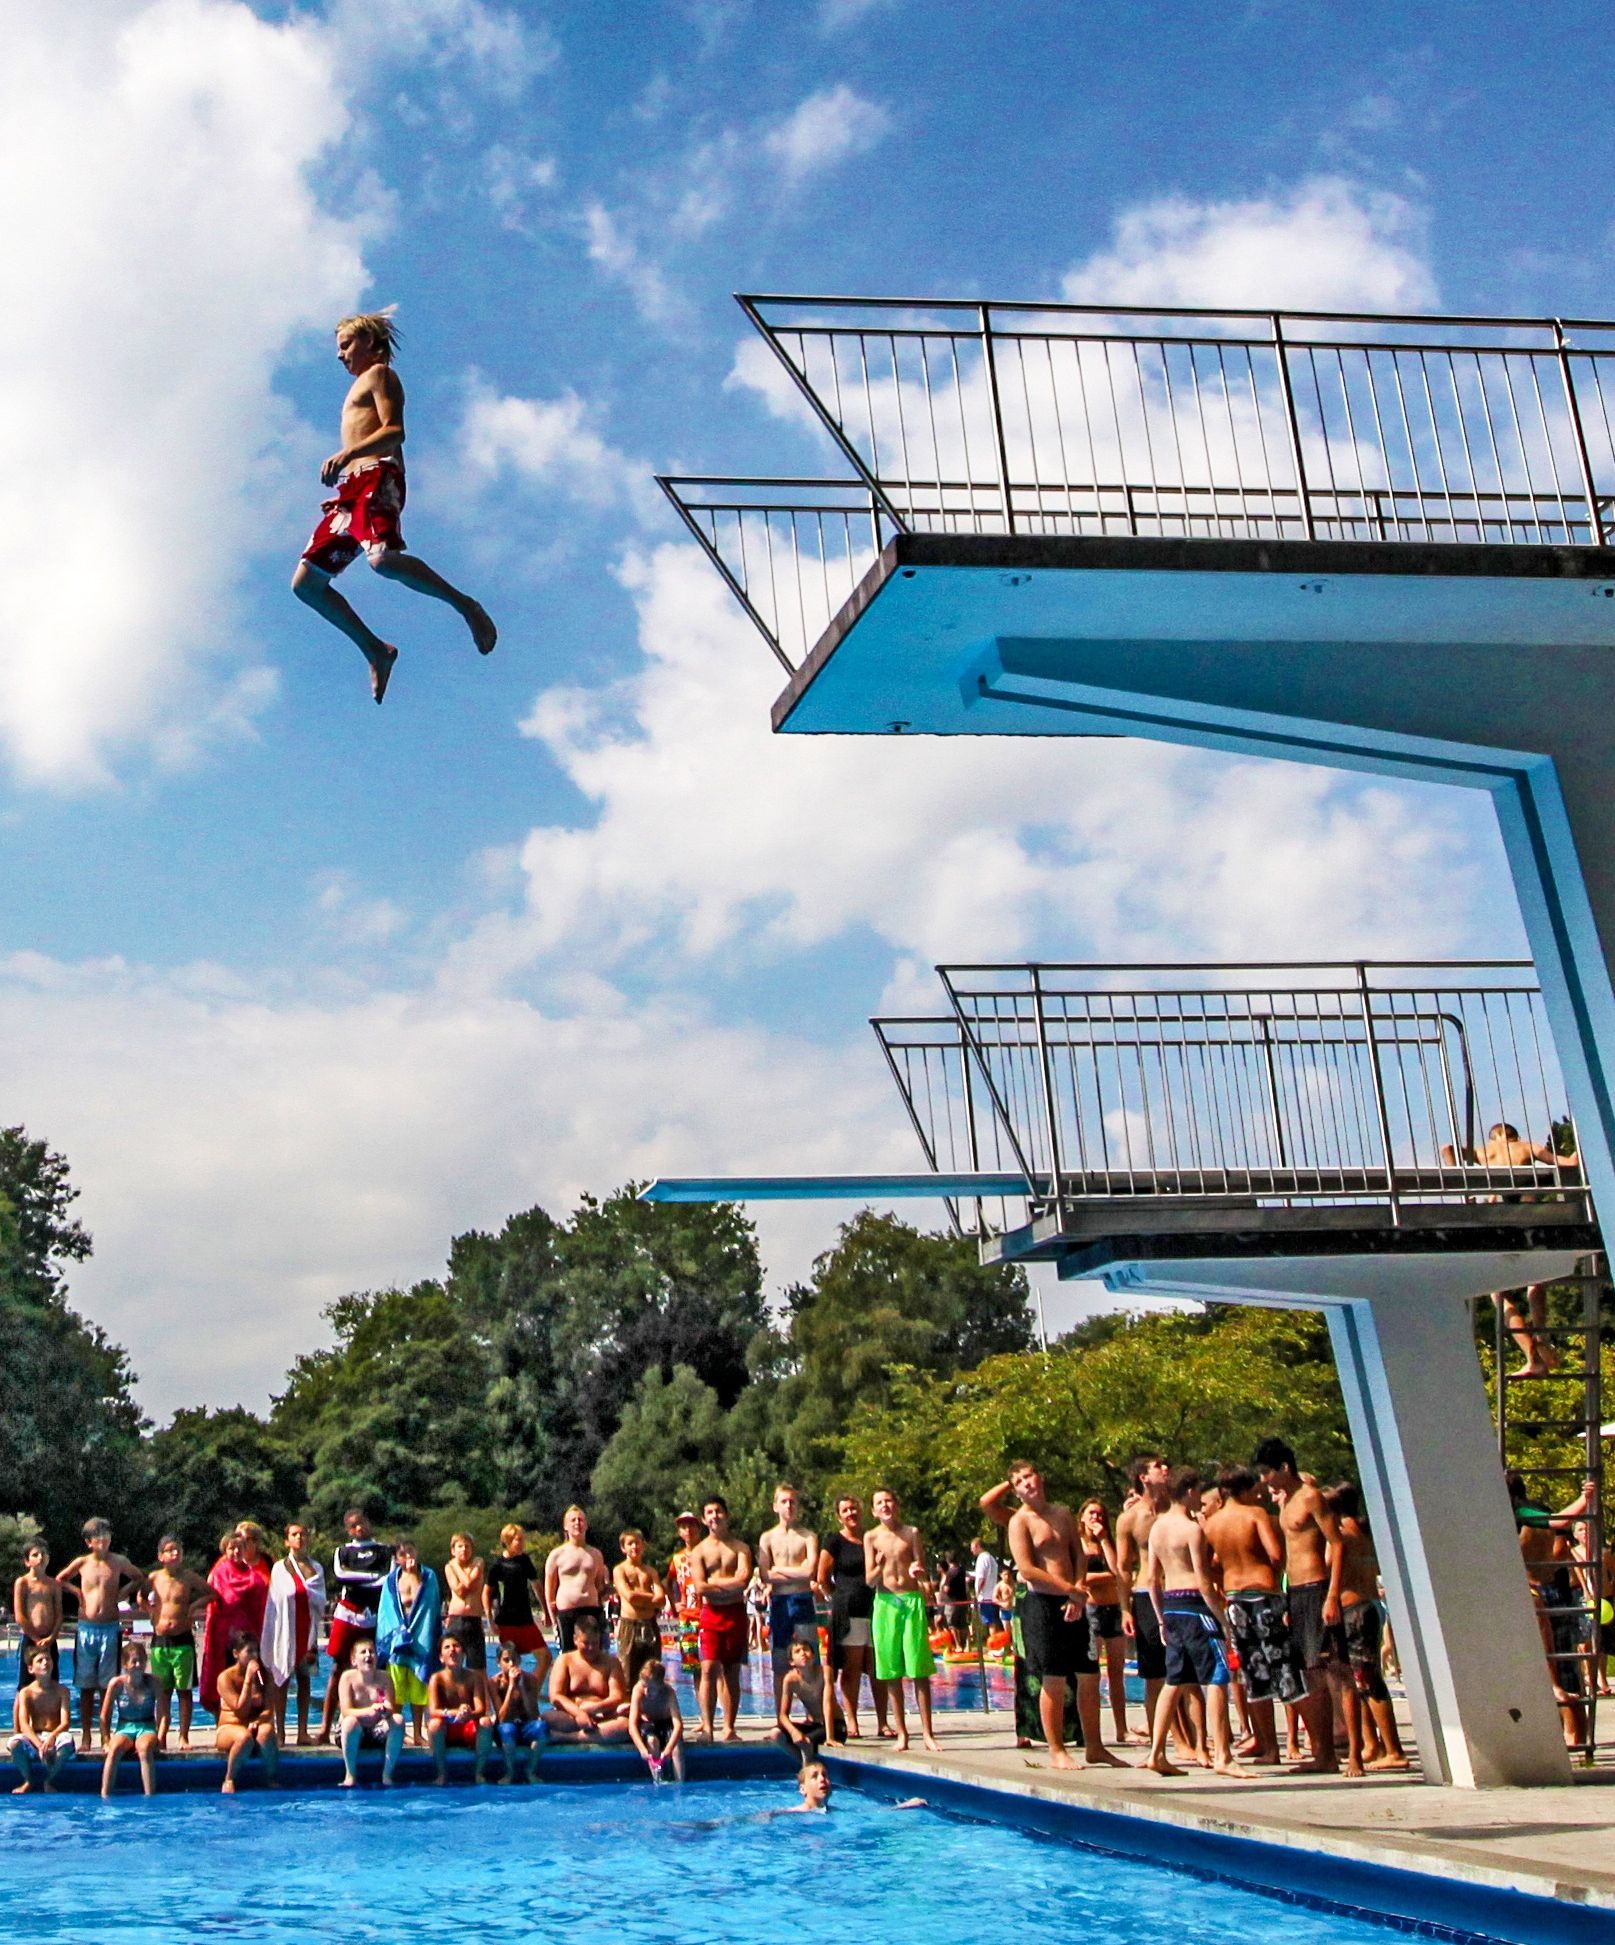 Junge springt vom 5 Meterturm im Freibad, vom Beckenrand schauen ihm einige Jugendliche dabei zu